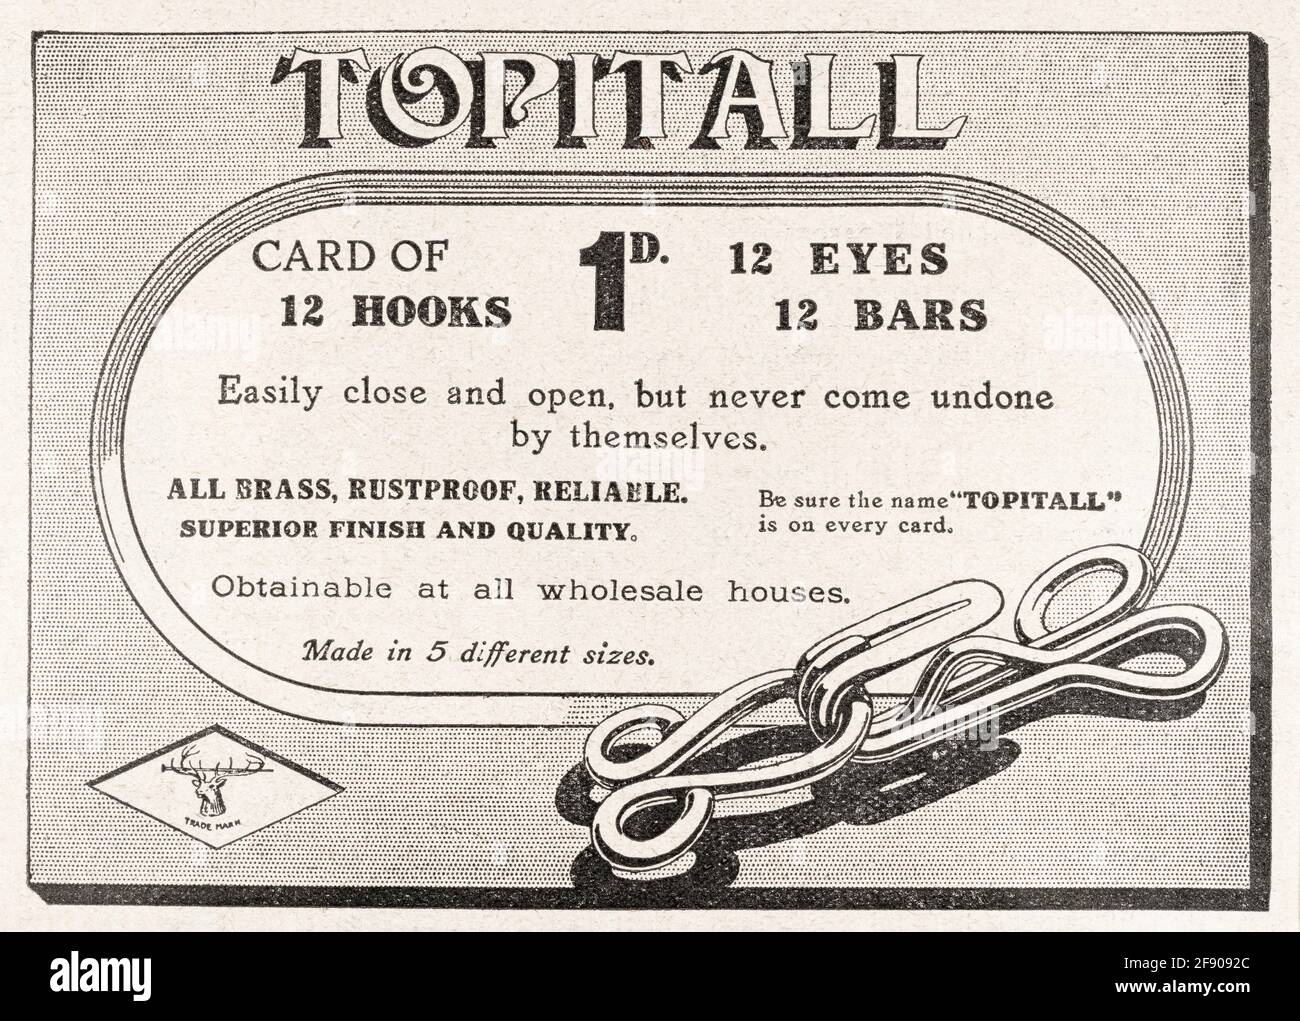 Alte Print-Kleidung näht Werbung aus Edwardian Times - 1911 - vor dem Anbruch der Werbestandards. Edwardianische Nähwerbung, Werbung für alte Kleidung. Stockfoto